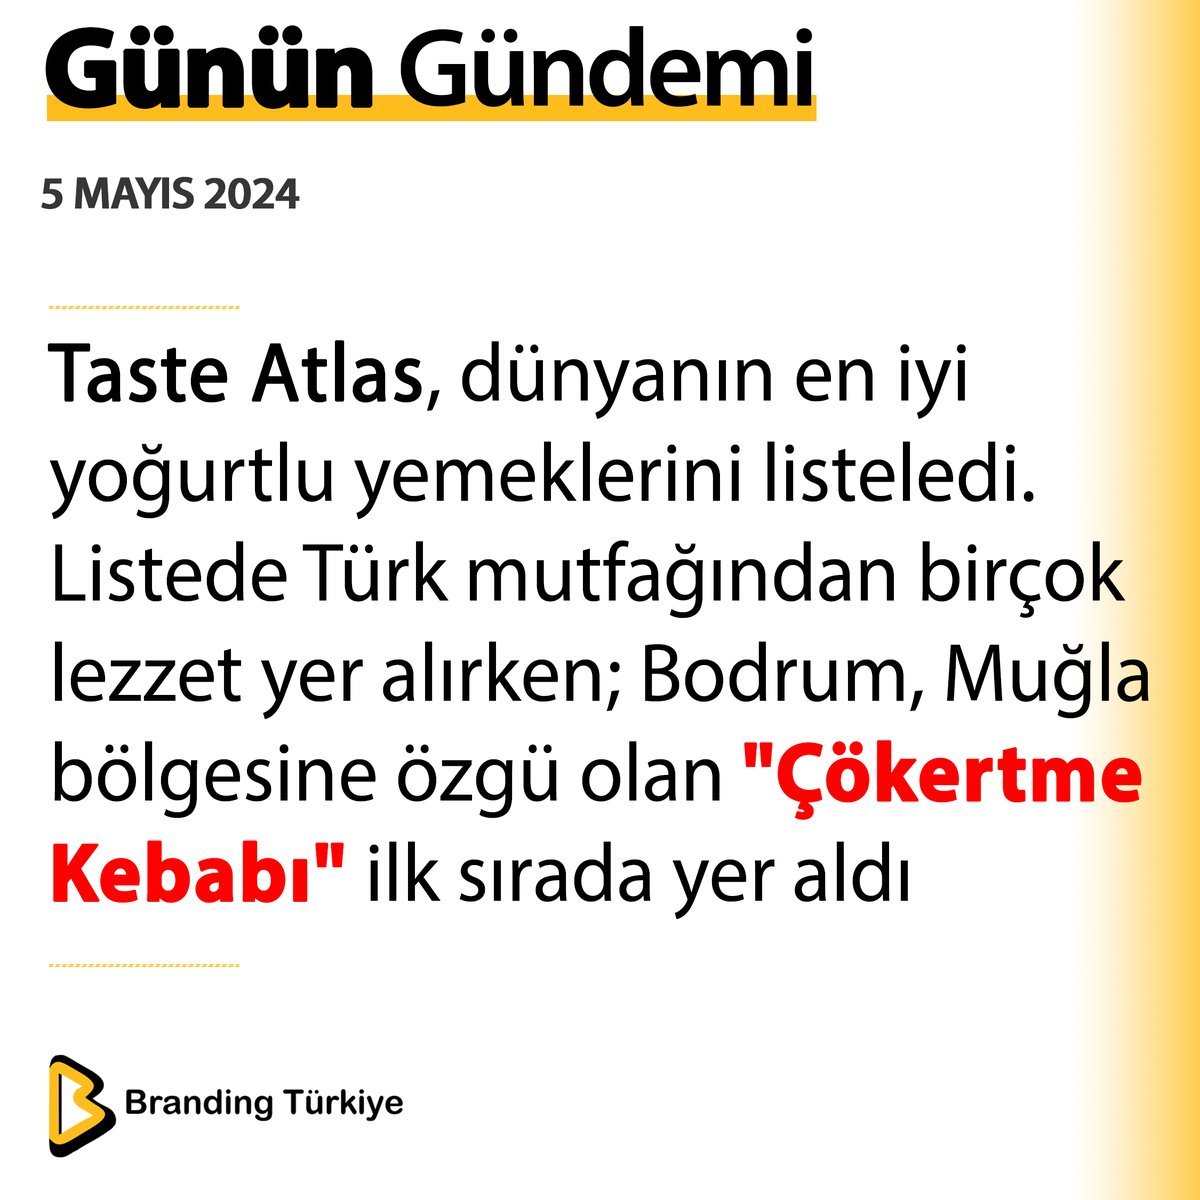 #5Mayıs2024

Taste Atlas, dünyanın en iyi yoğurtlu yemeklerini listeledi. 

▶ brandingturkiye.com
#BrandingTürkiye #Haberler #TasteAtlas #Yemek #ÇökertmeKebabı #Bodrum #TürkMutfağı #Gastronomi #Muğla #Yoğurt #SonDakika